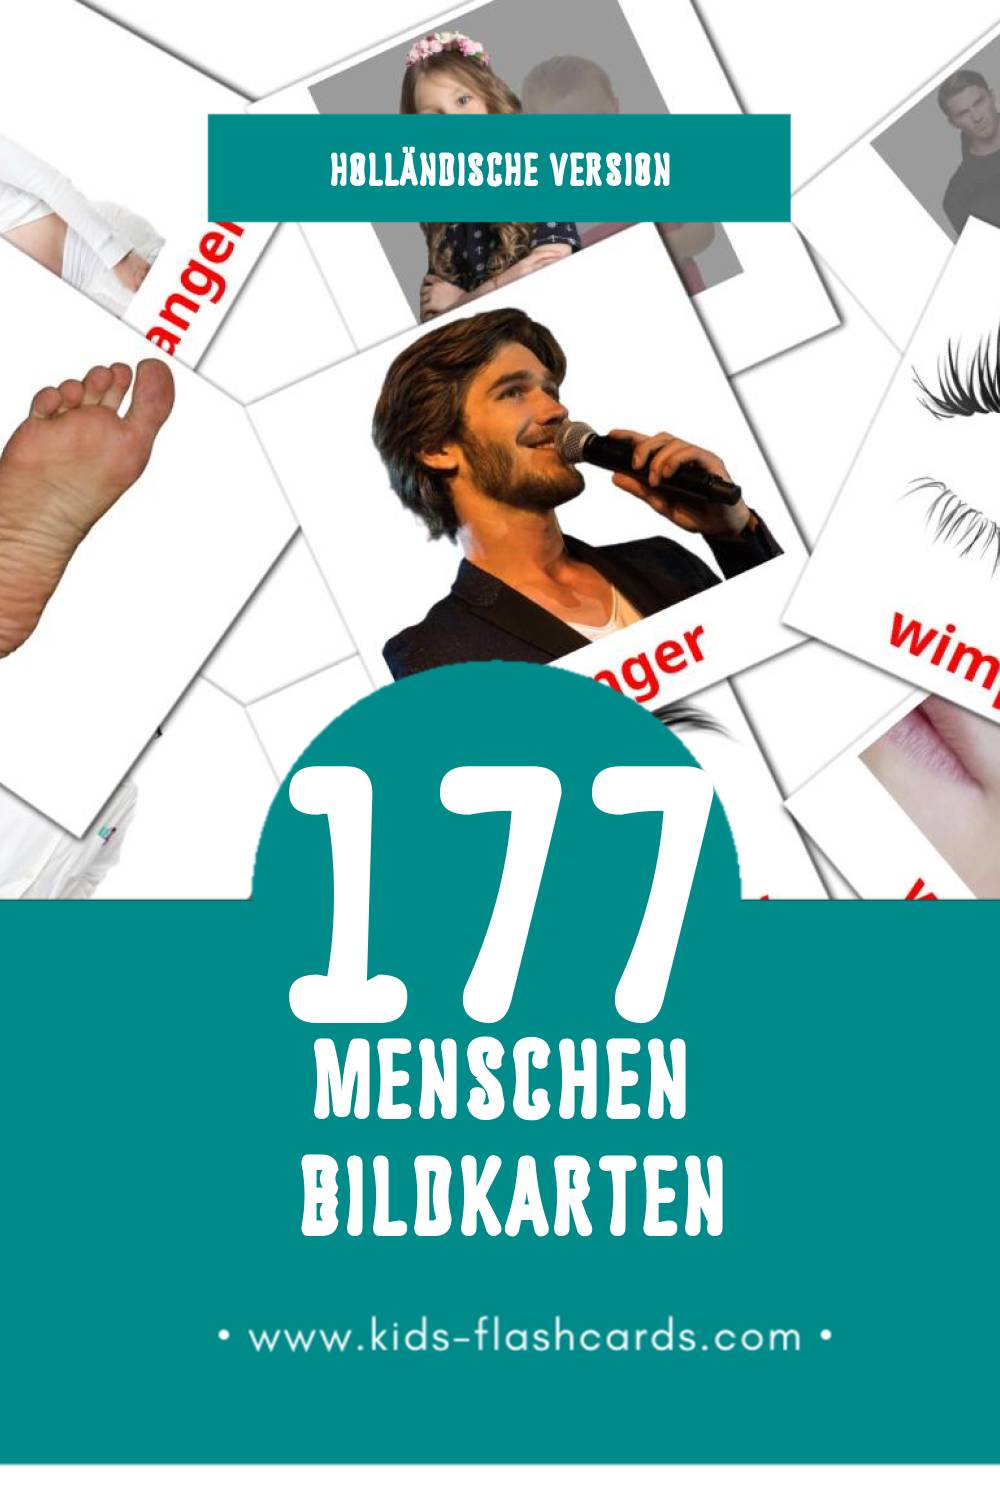 Visual Mensen Flashcards für Kleinkinder (177 Karten in Holländisch)